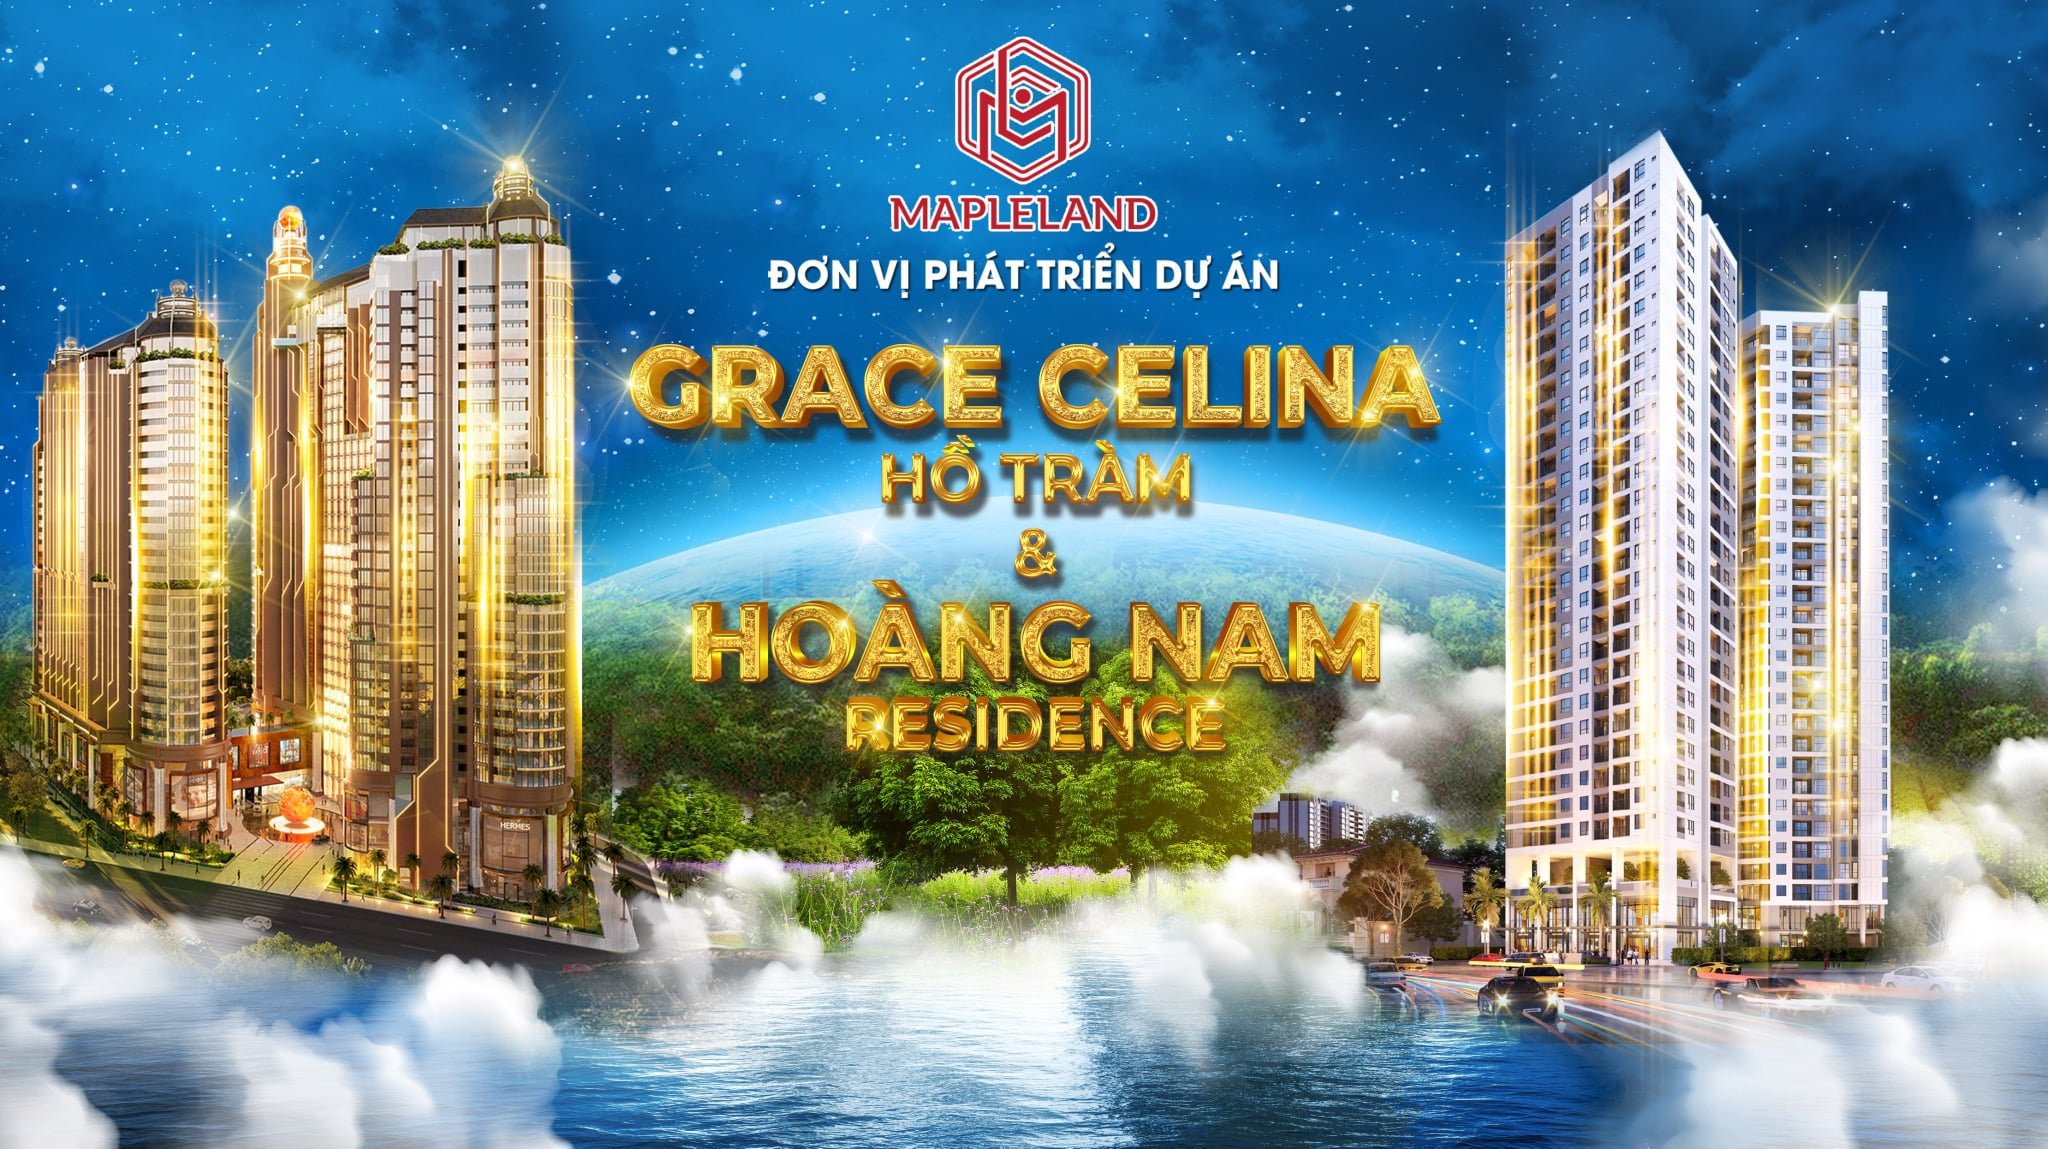 Grace Celina va Honas Residence